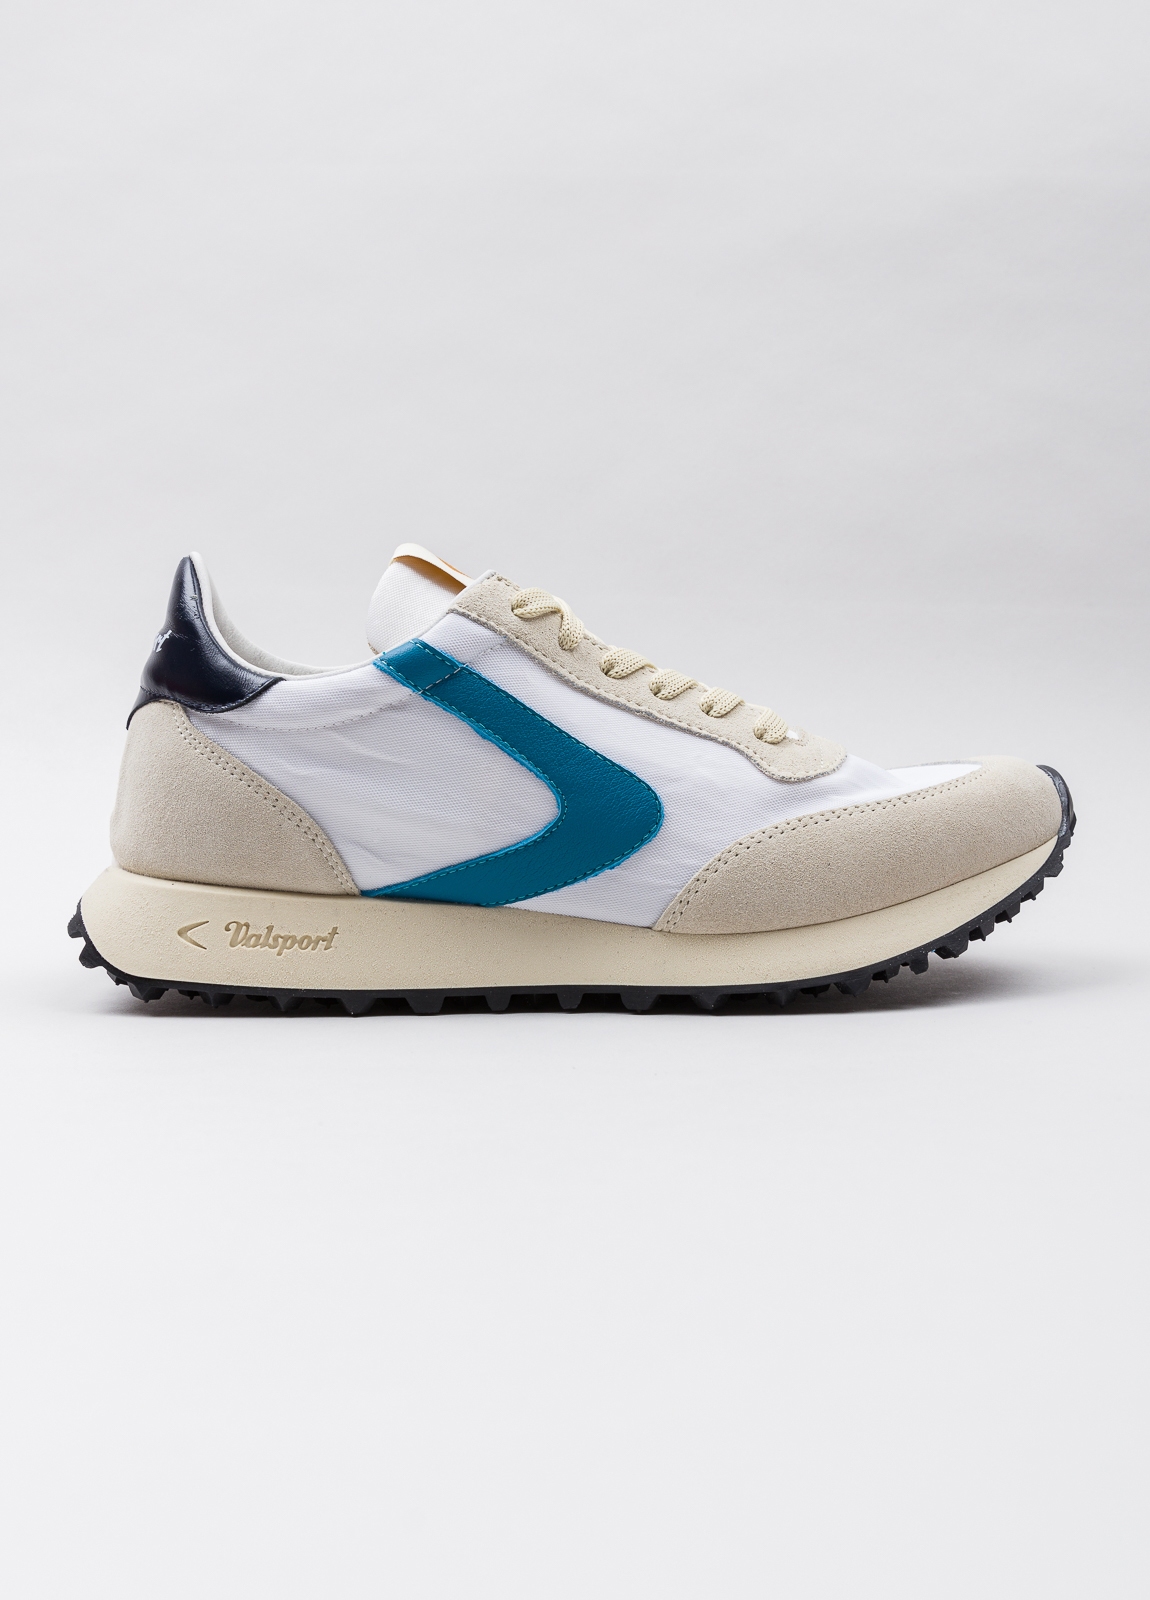 Sneakers VALSPORT blanca y beige con detalles azul y negro - Ítem4